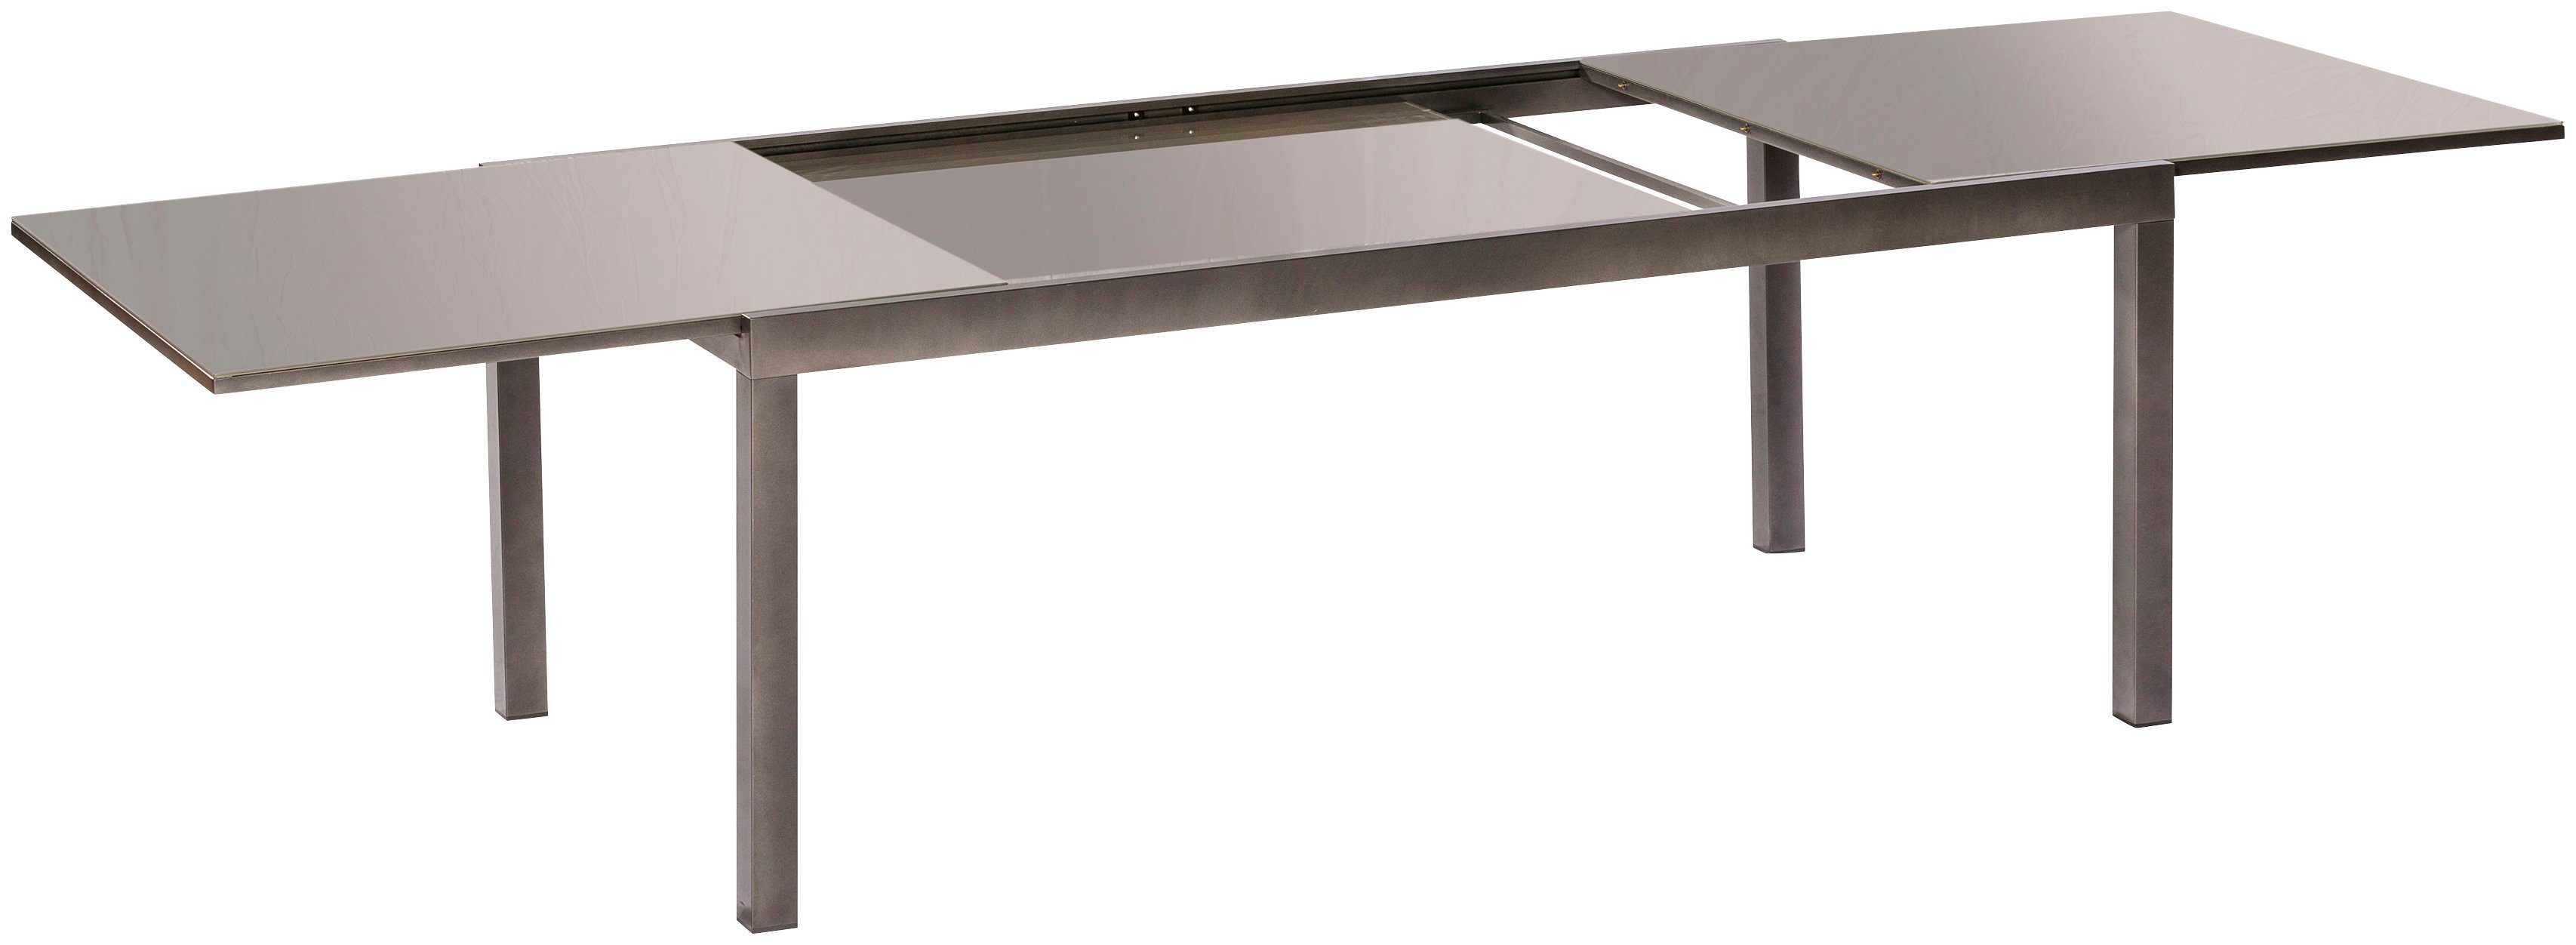 MERXX Gartentisch Semi AZ-Tisch, 110x220 cm | Tische